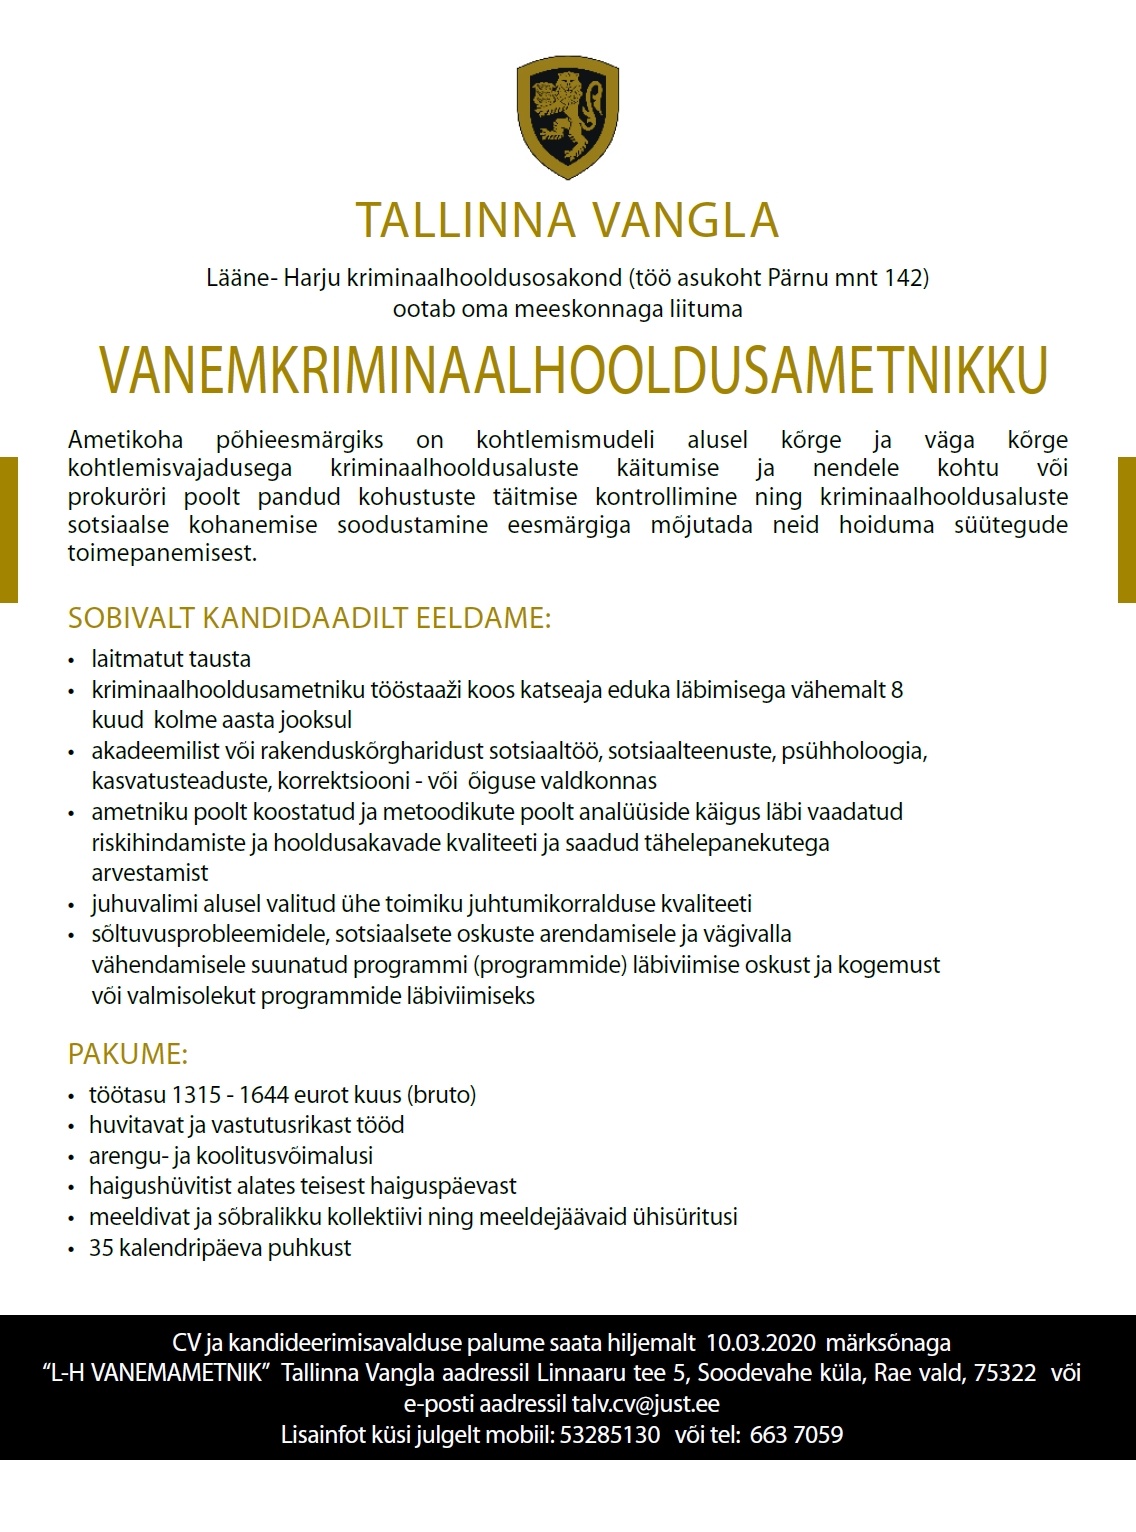 Tallinna Vangla Lääne-Harju Kriminaalhooldusosakonna vanemkriminaalhooldusametnik